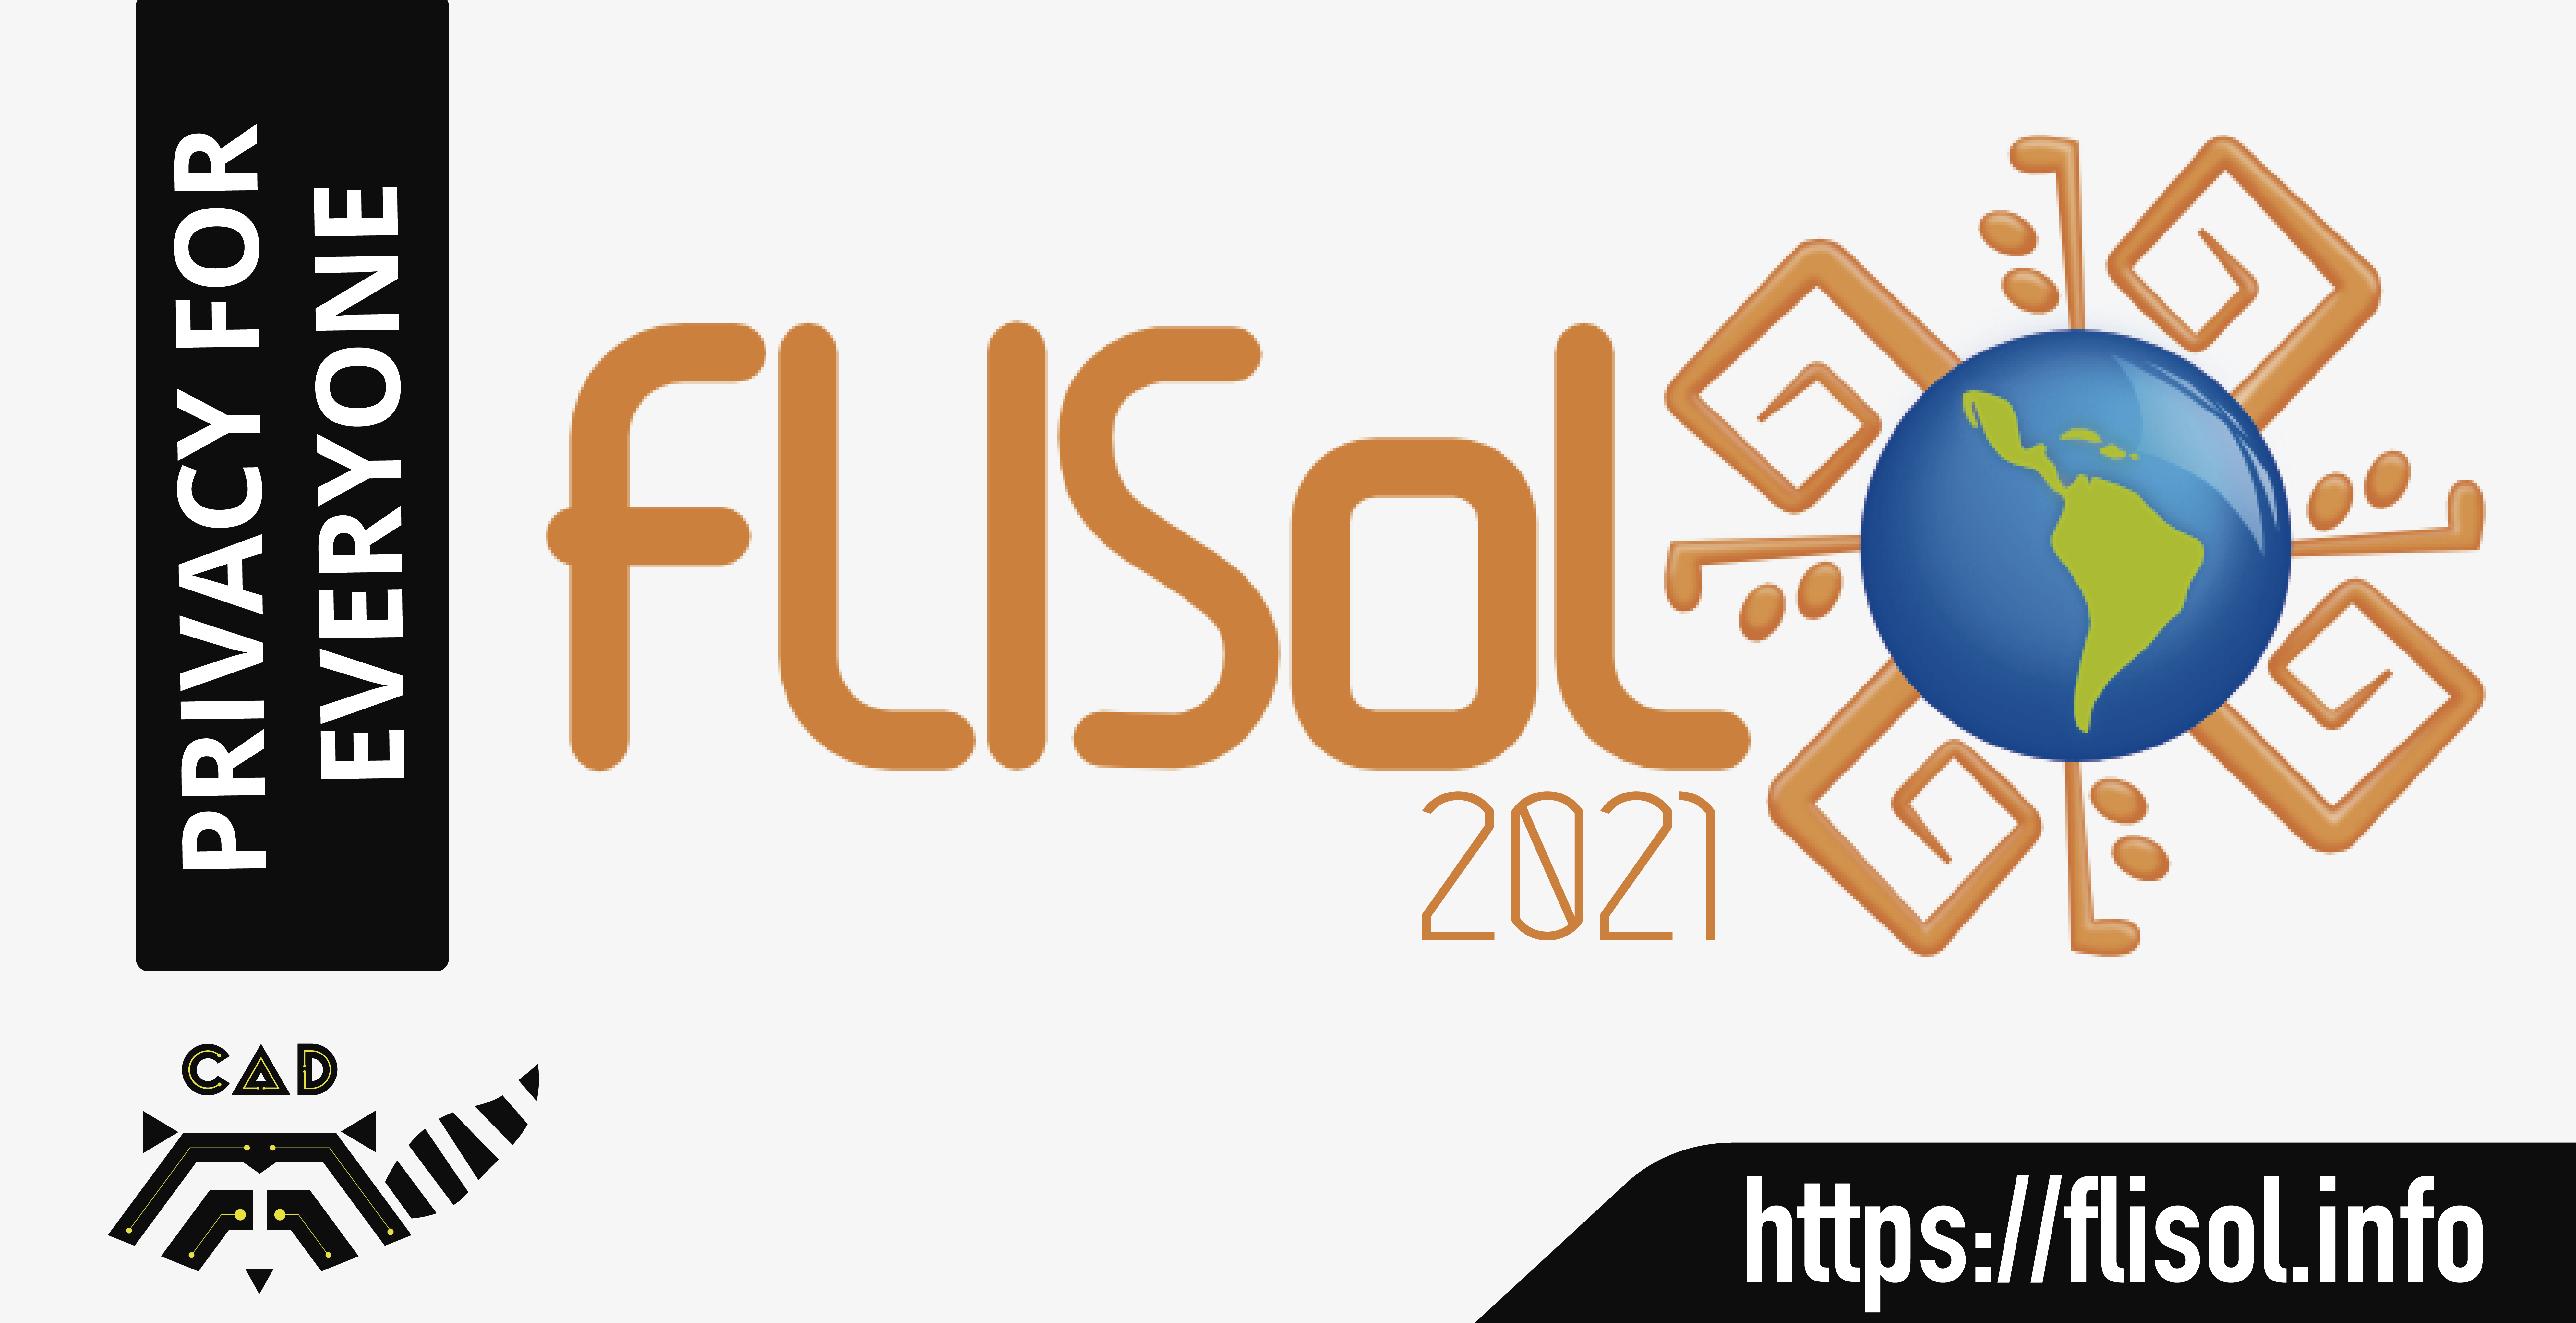 CAD, present at FLISOL 2021!